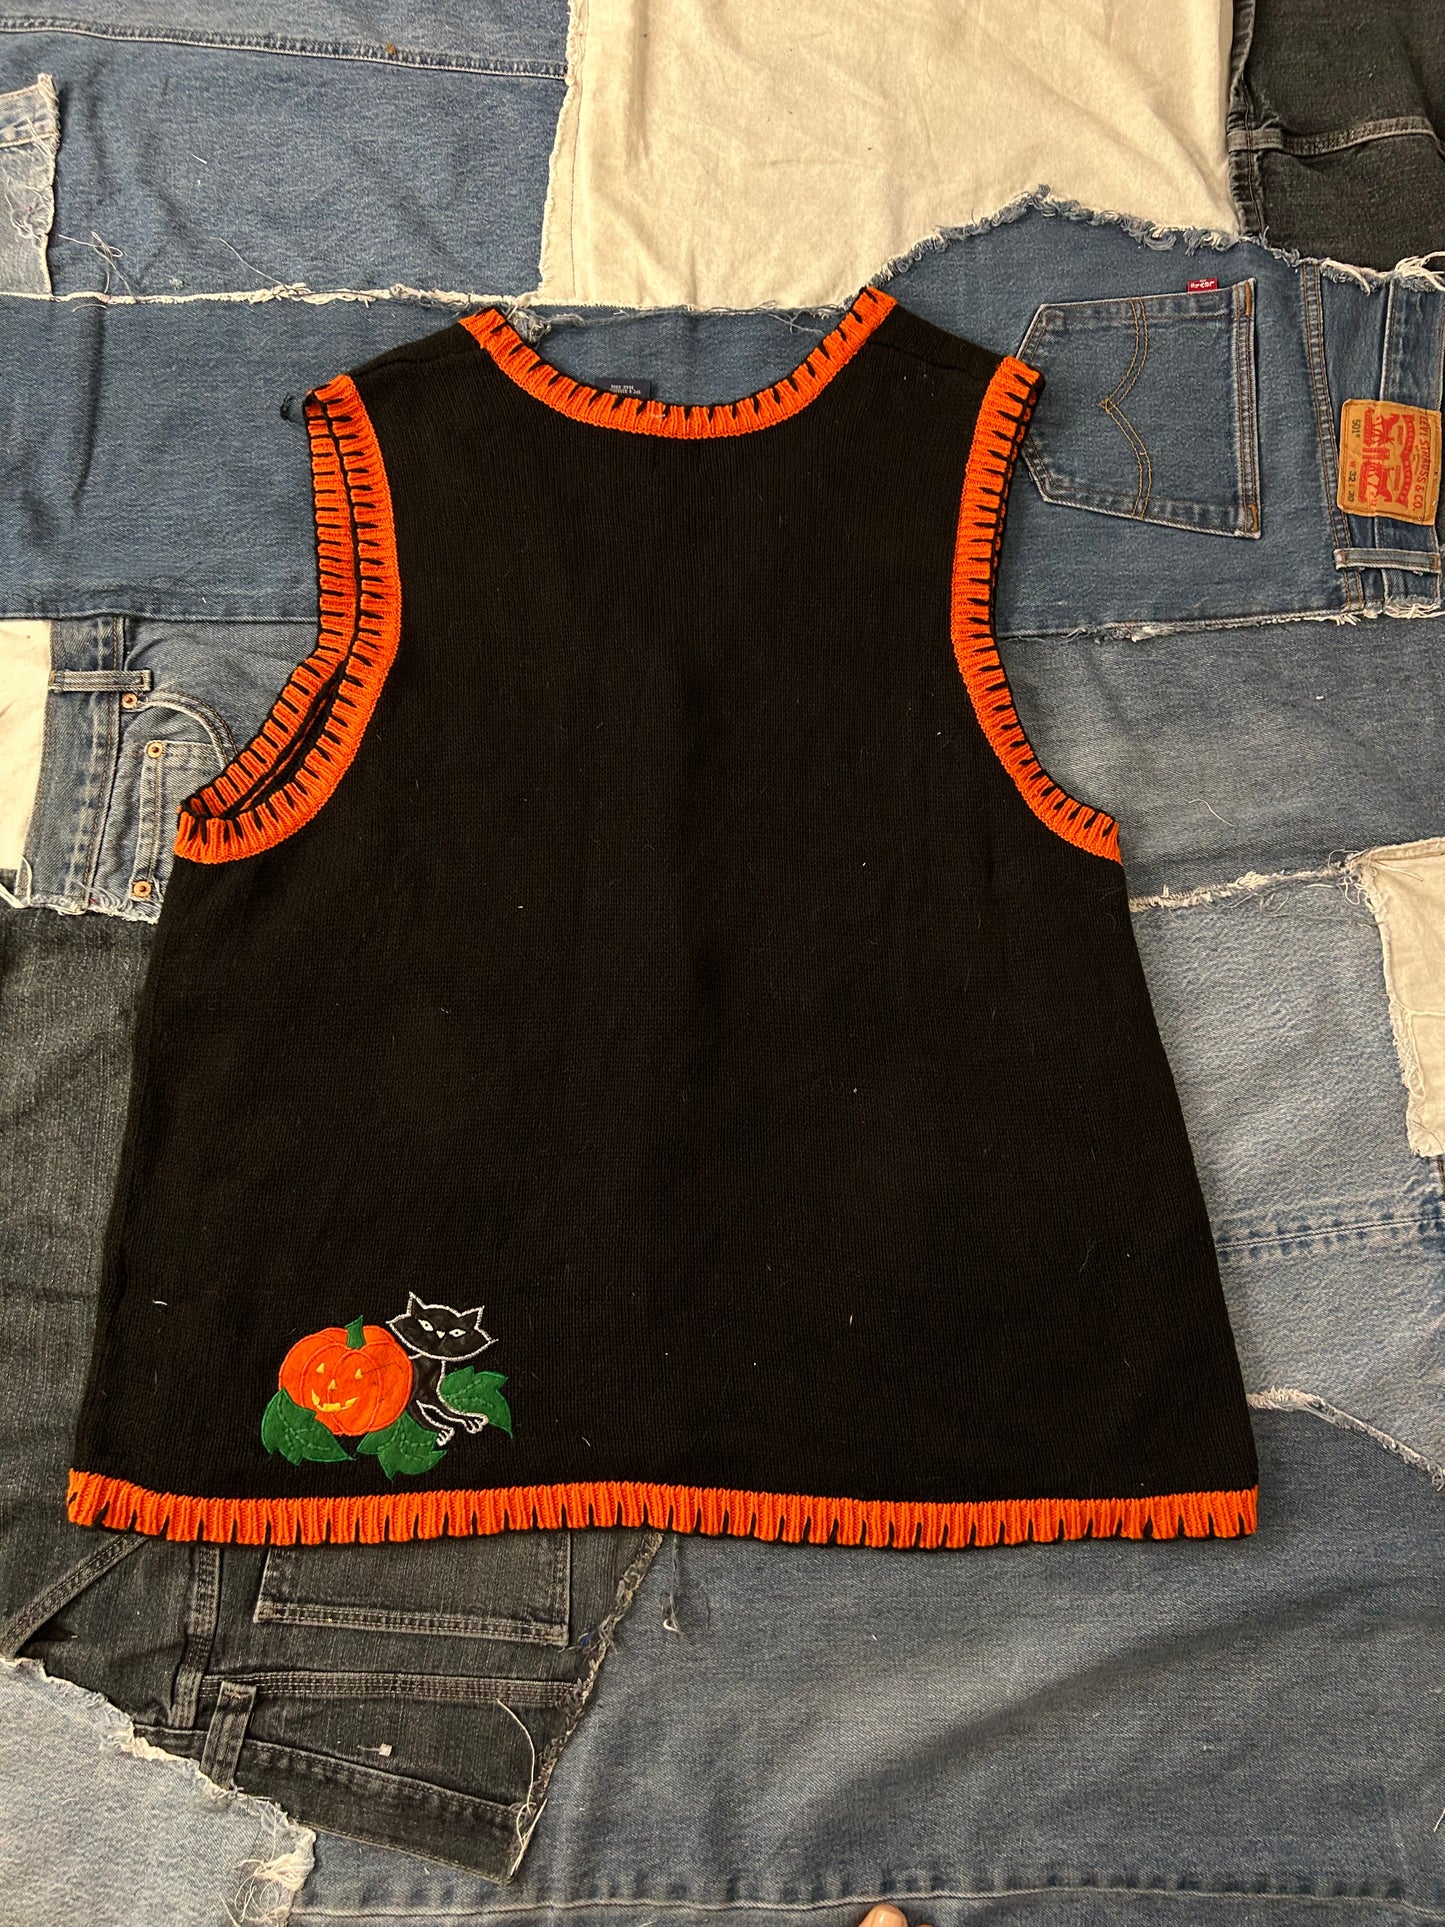 Spooky Pumpkin Patch Vest